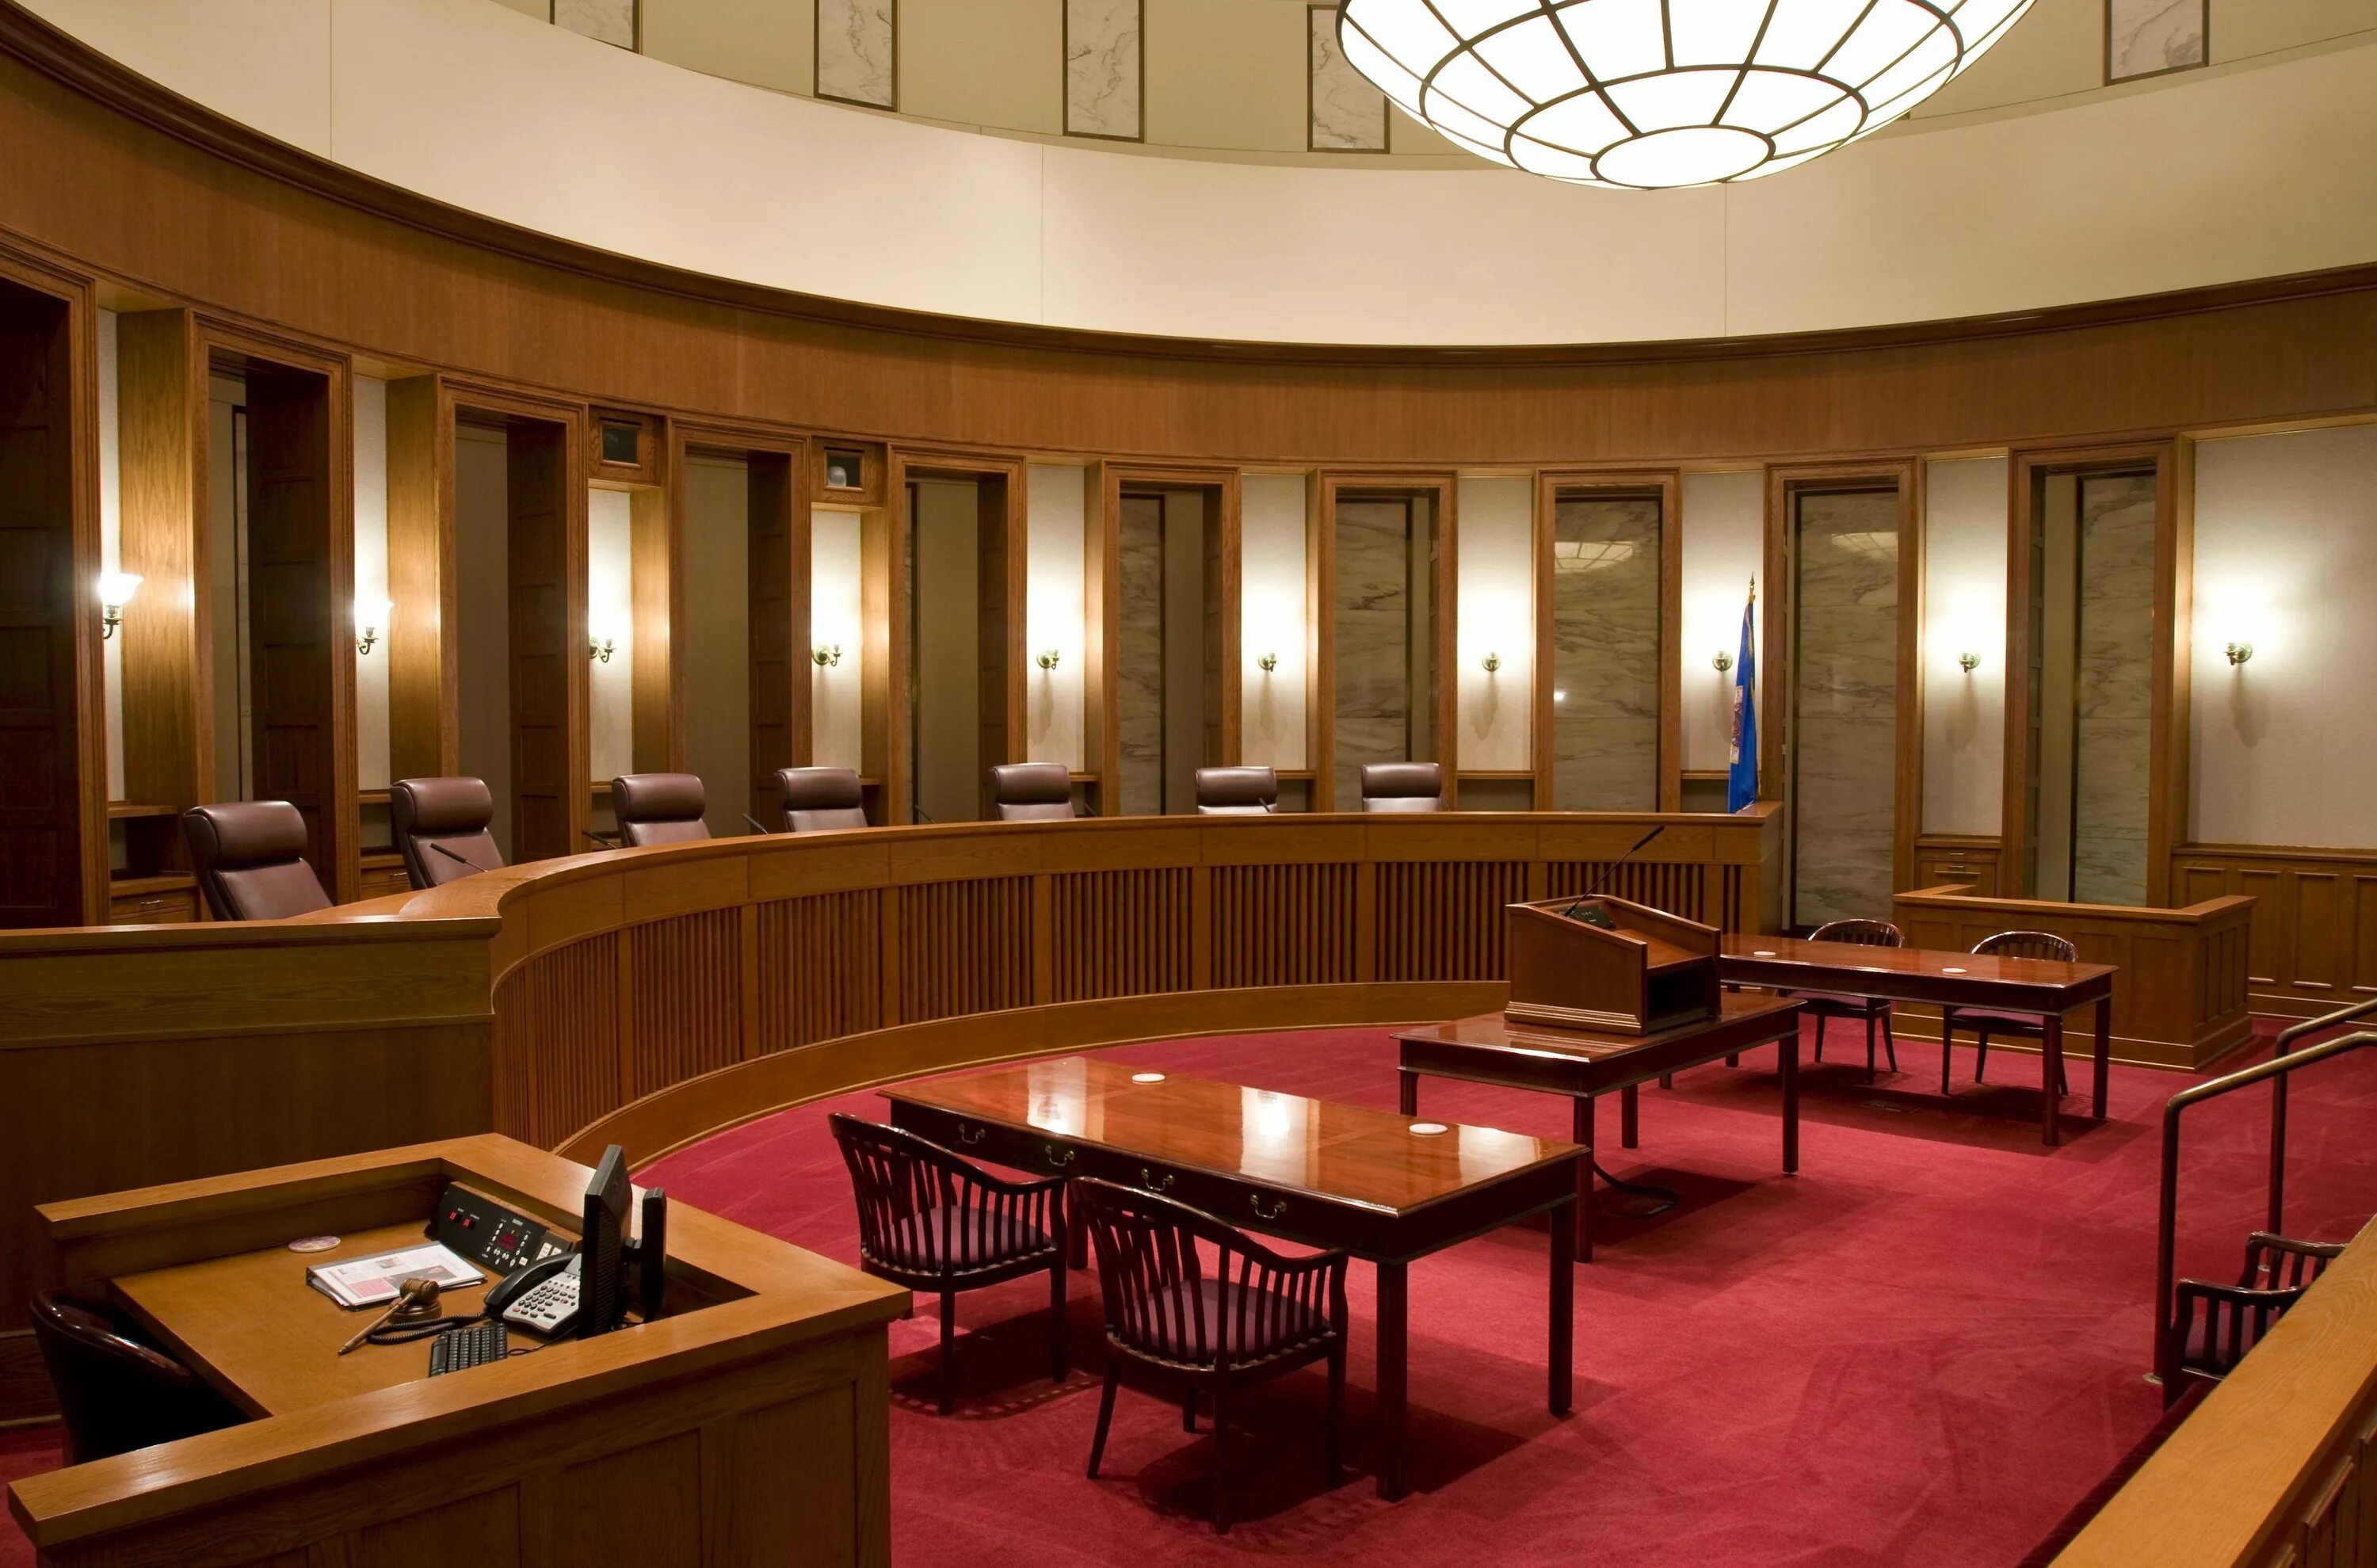 Зал суда США. Зал заседания суда. Здание суда внутри. Зал заседаний Верховного суда.